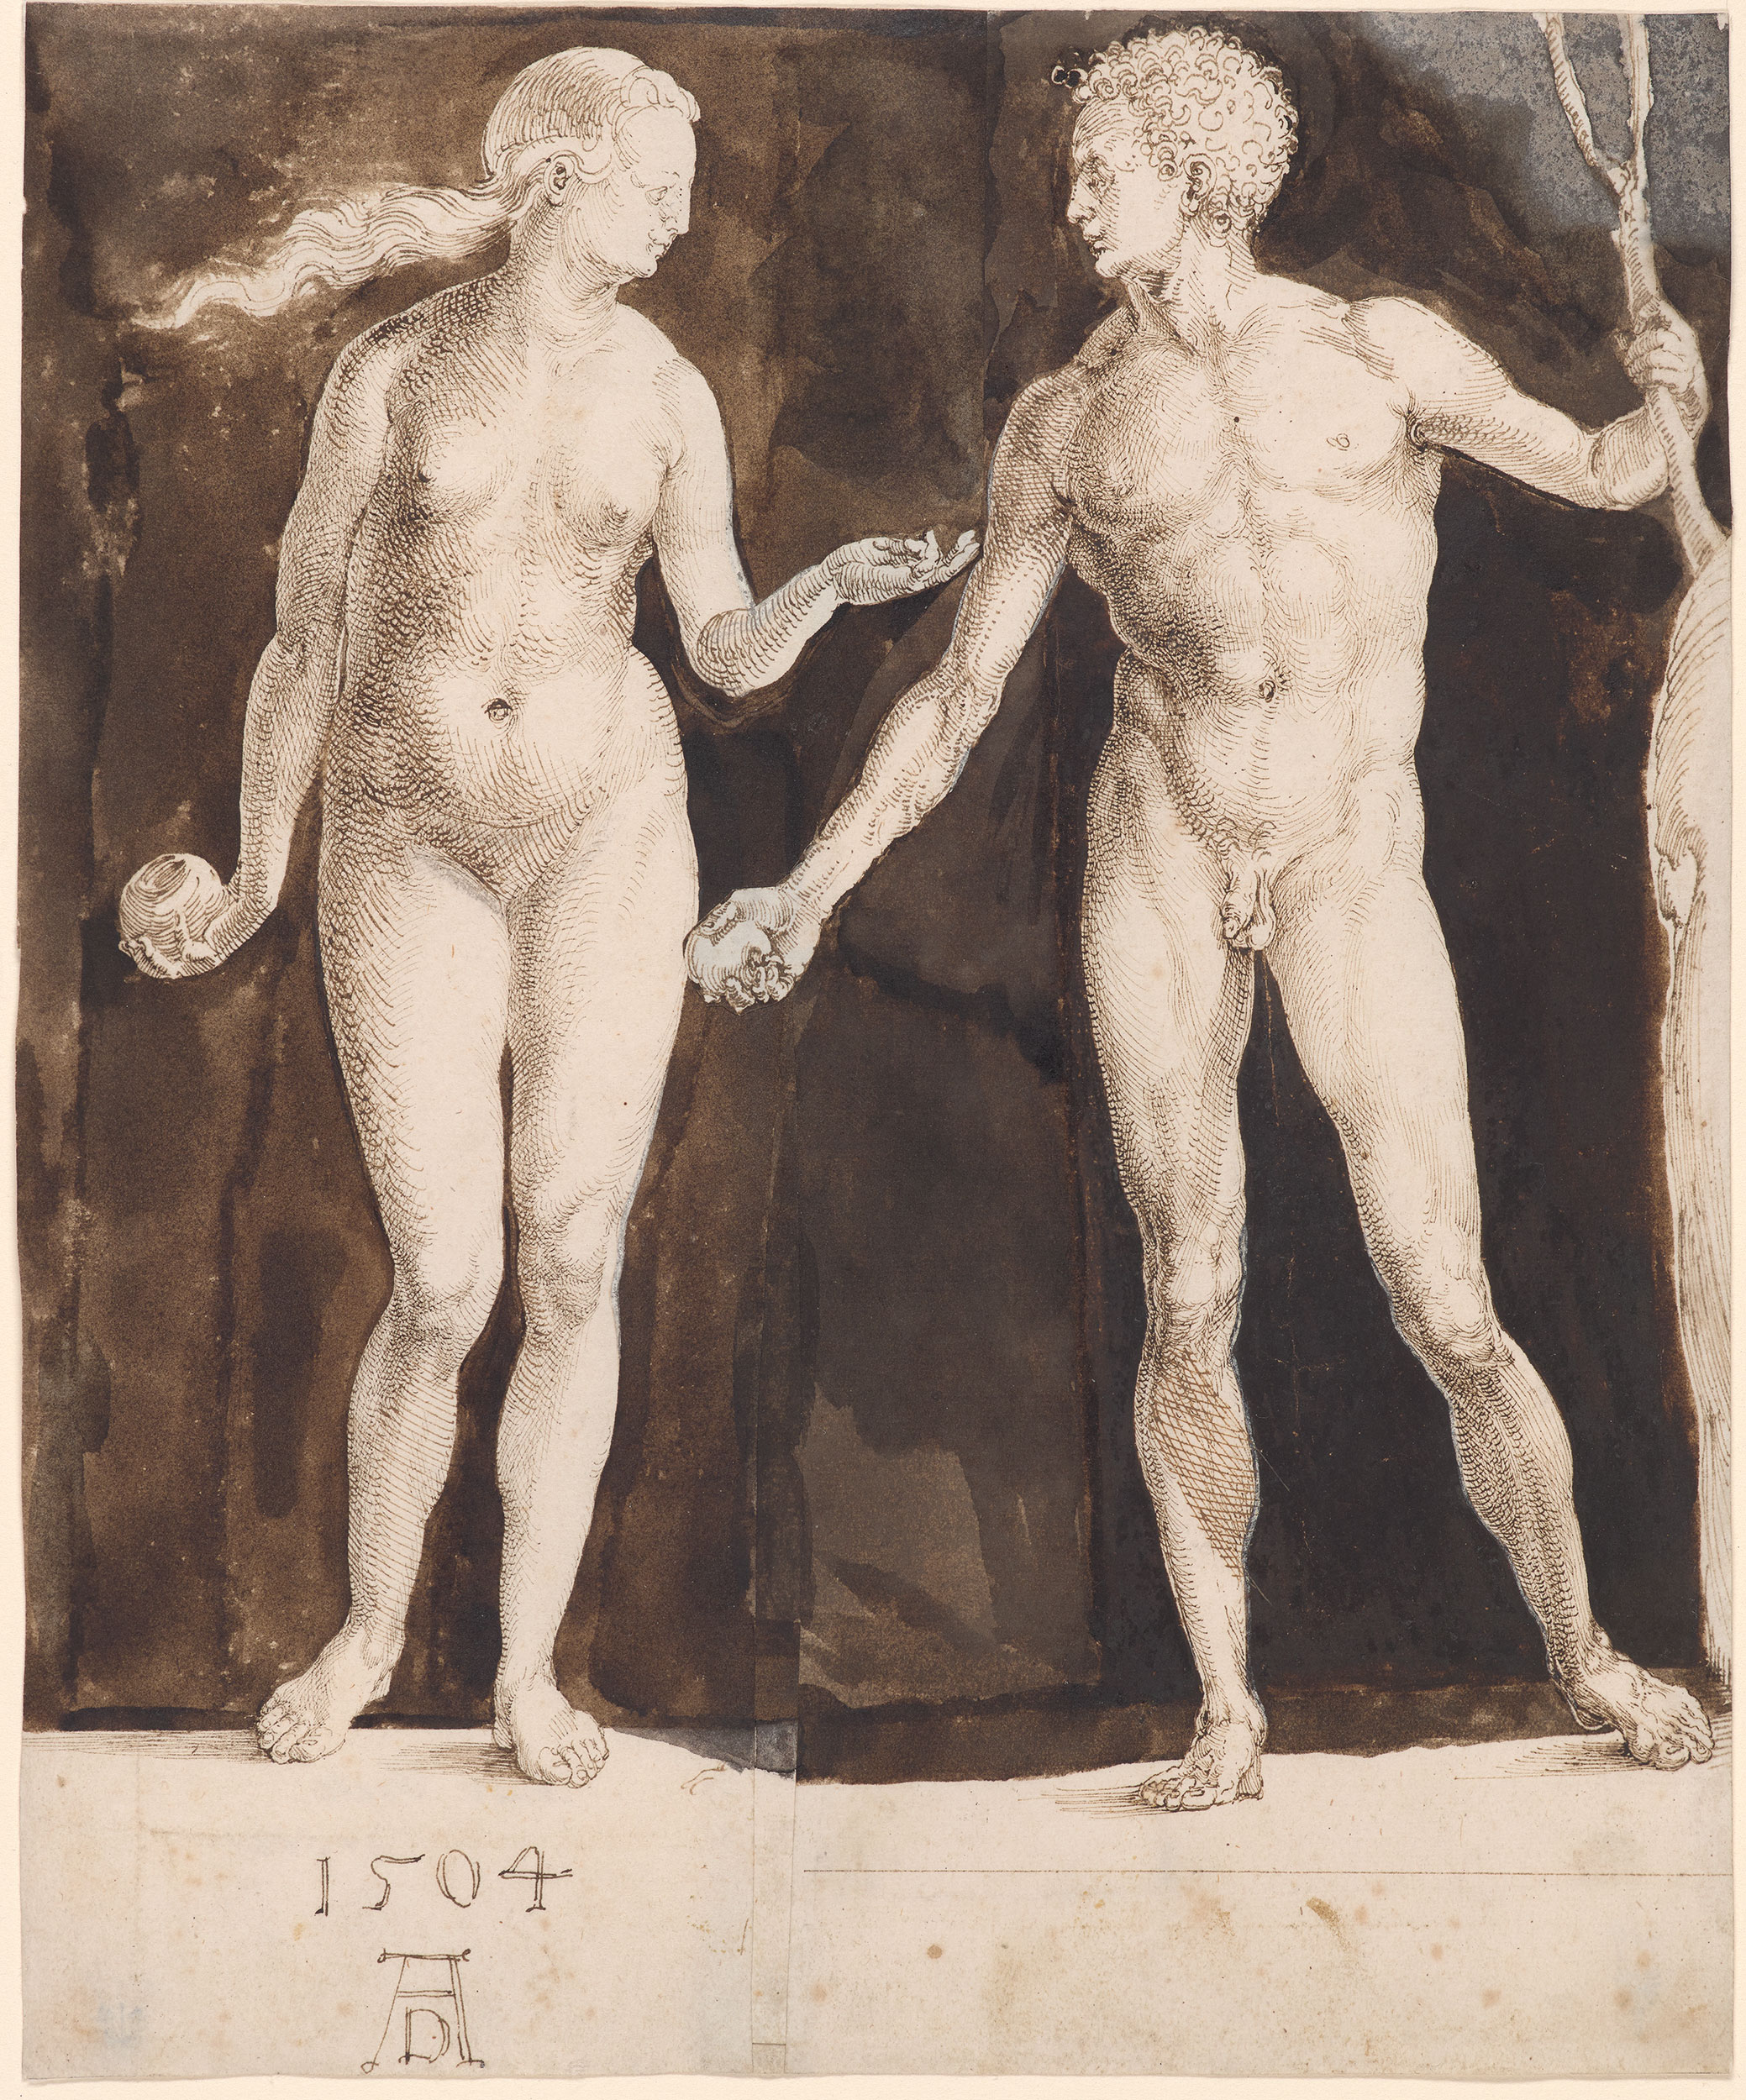 Ádám és Éva by Albrecht Dürer - 1504 - 242 x 201 mm 